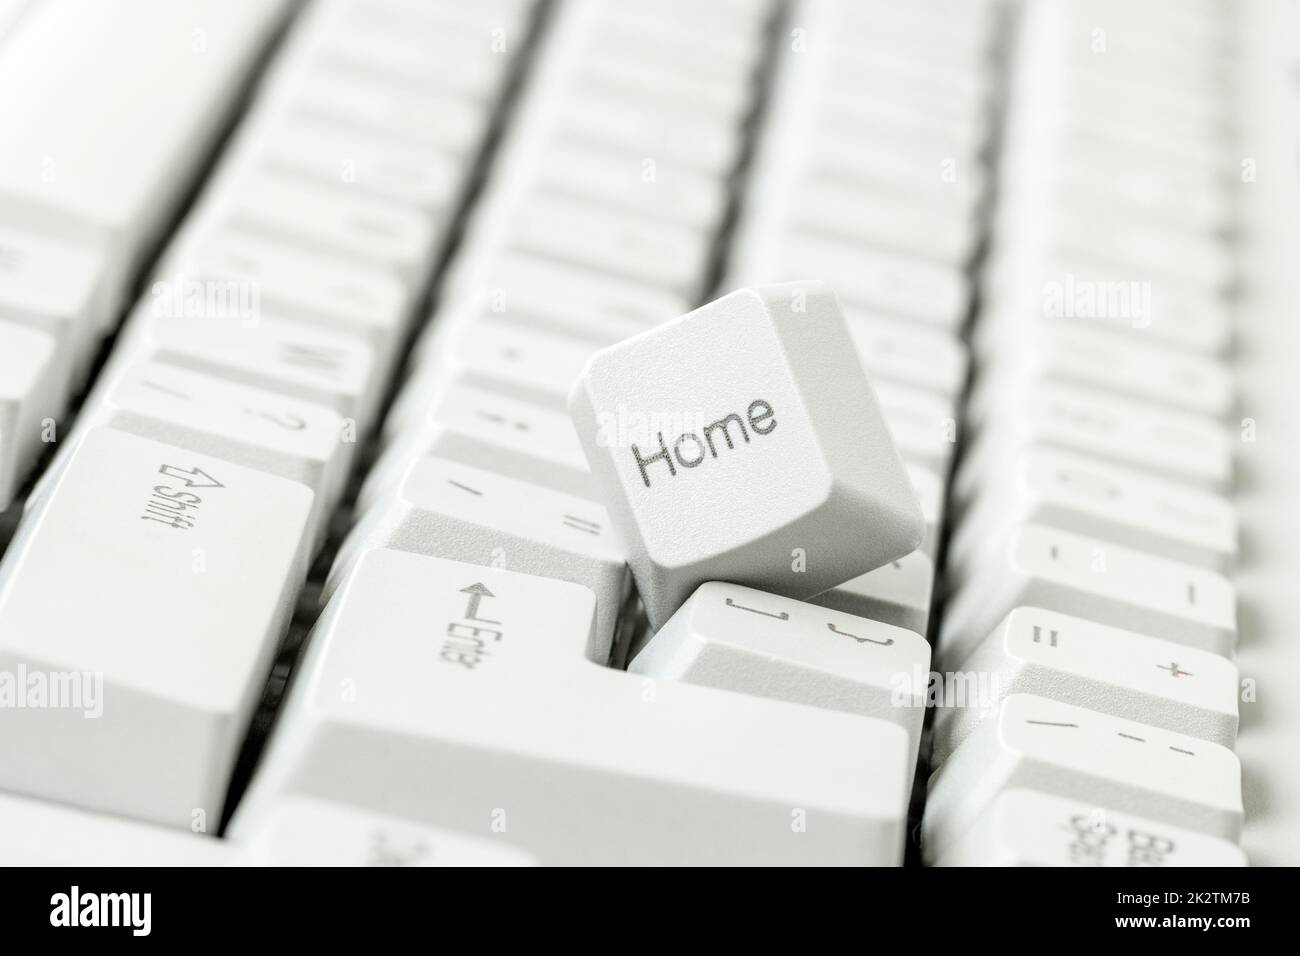 HOME-Taste von einer Tastatur entfernt, die auf der Tastatur liegt Stockfoto